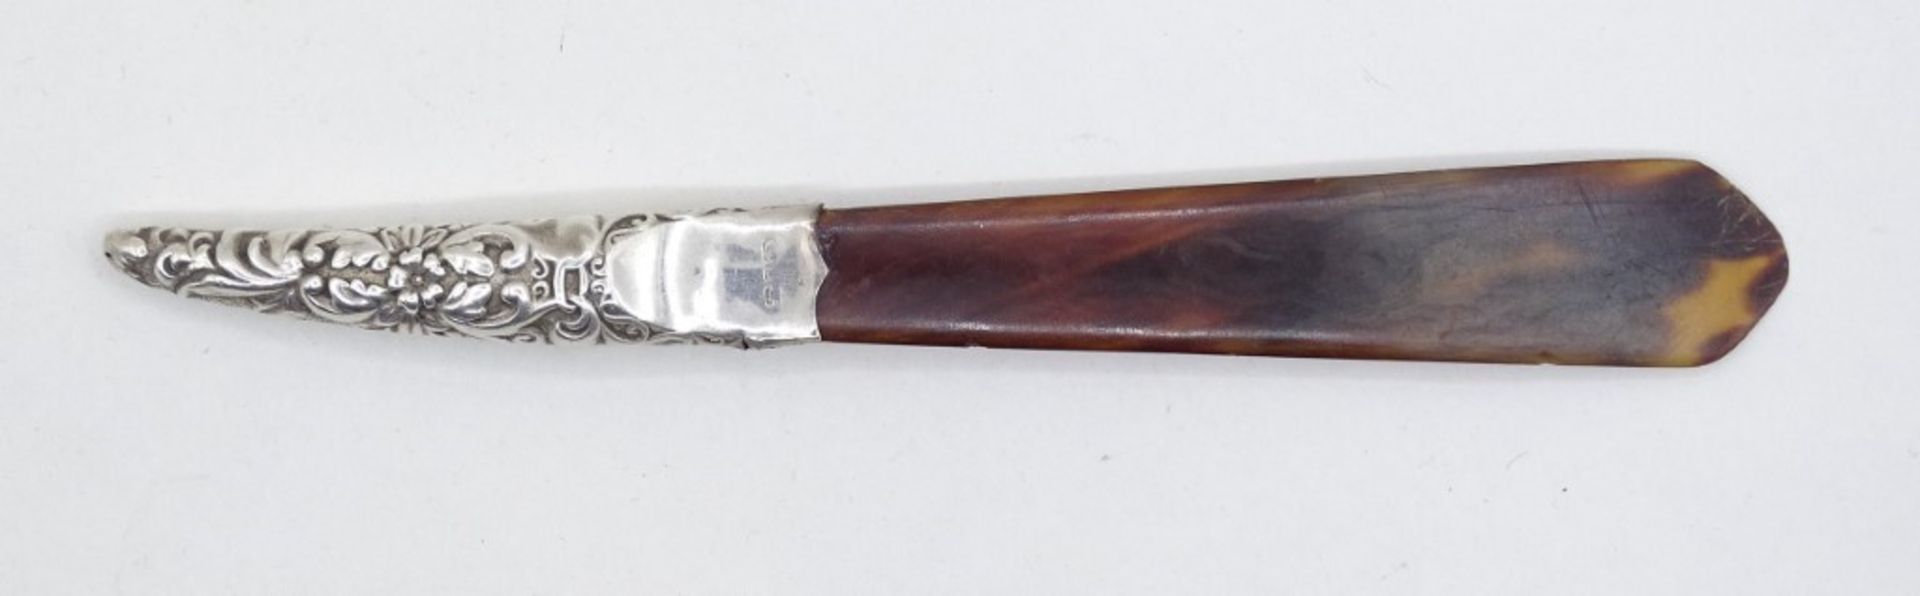 Brieföffner, Hornimitat mit Silbergriff (gepr.), Punze nicht mehr lesbar, L. 14,5 cm, 6 gr., mit Al